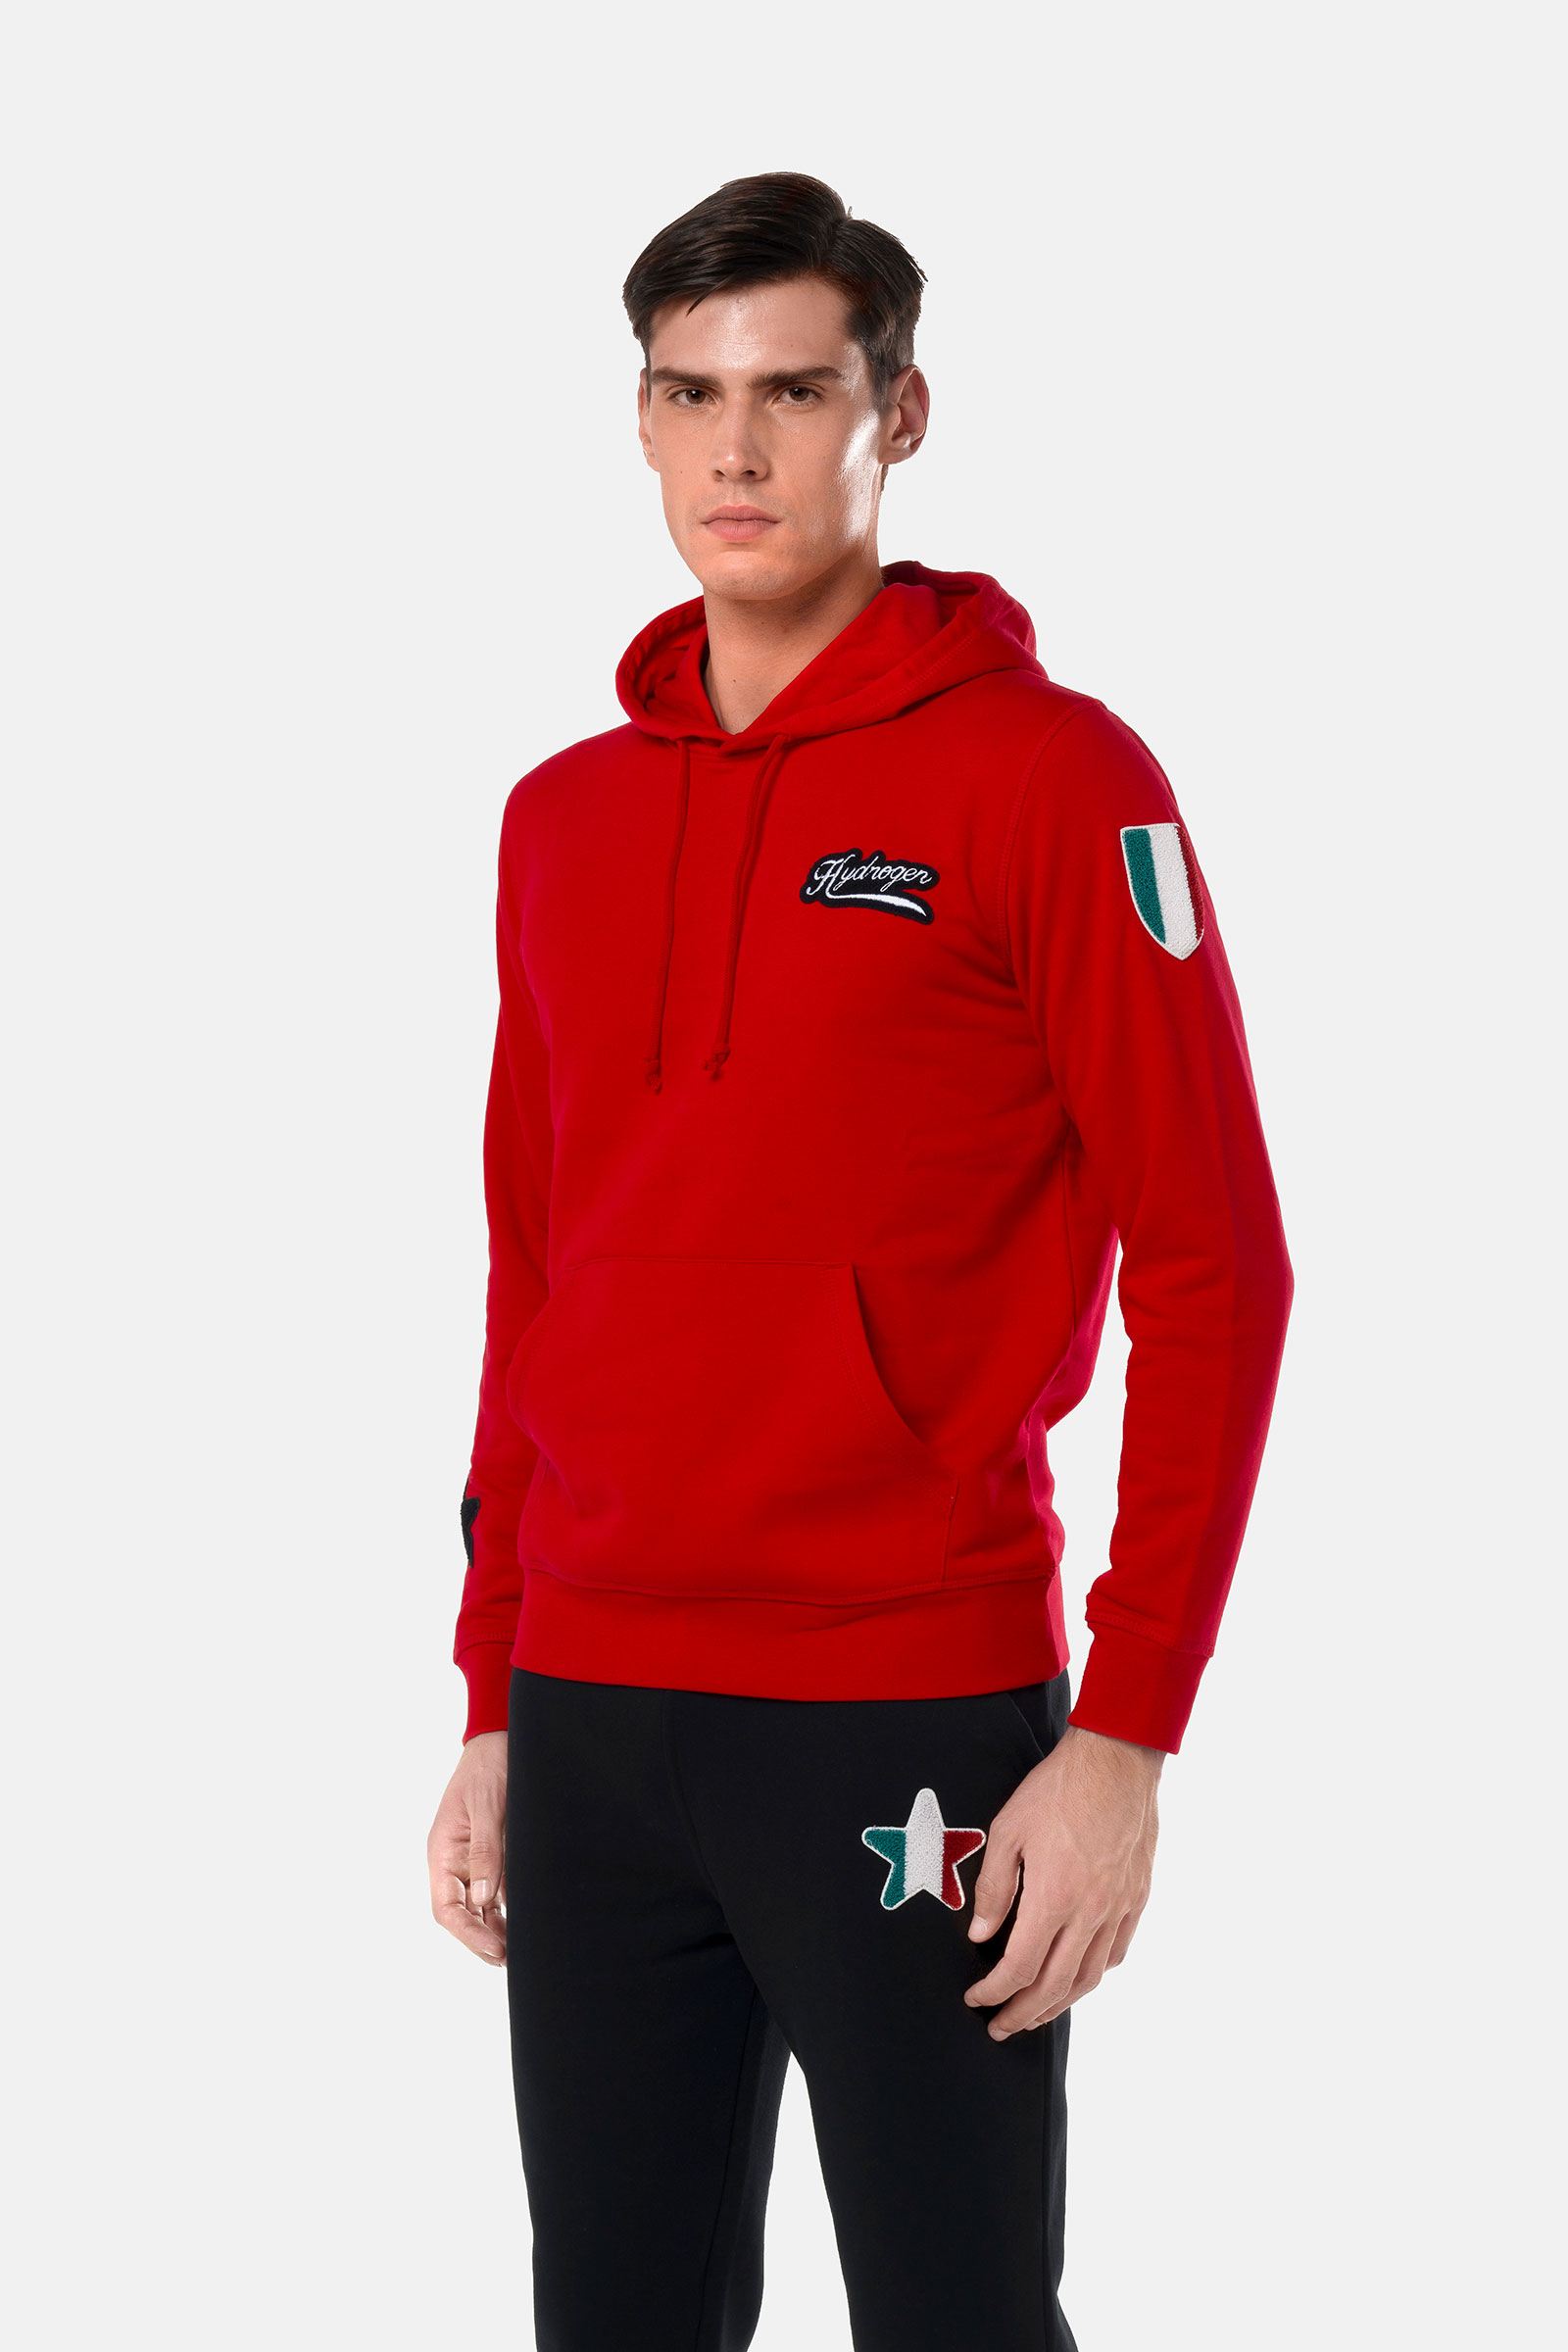 SHIELD HOODIE - RED - Hydrogen - Luxury Sportwear